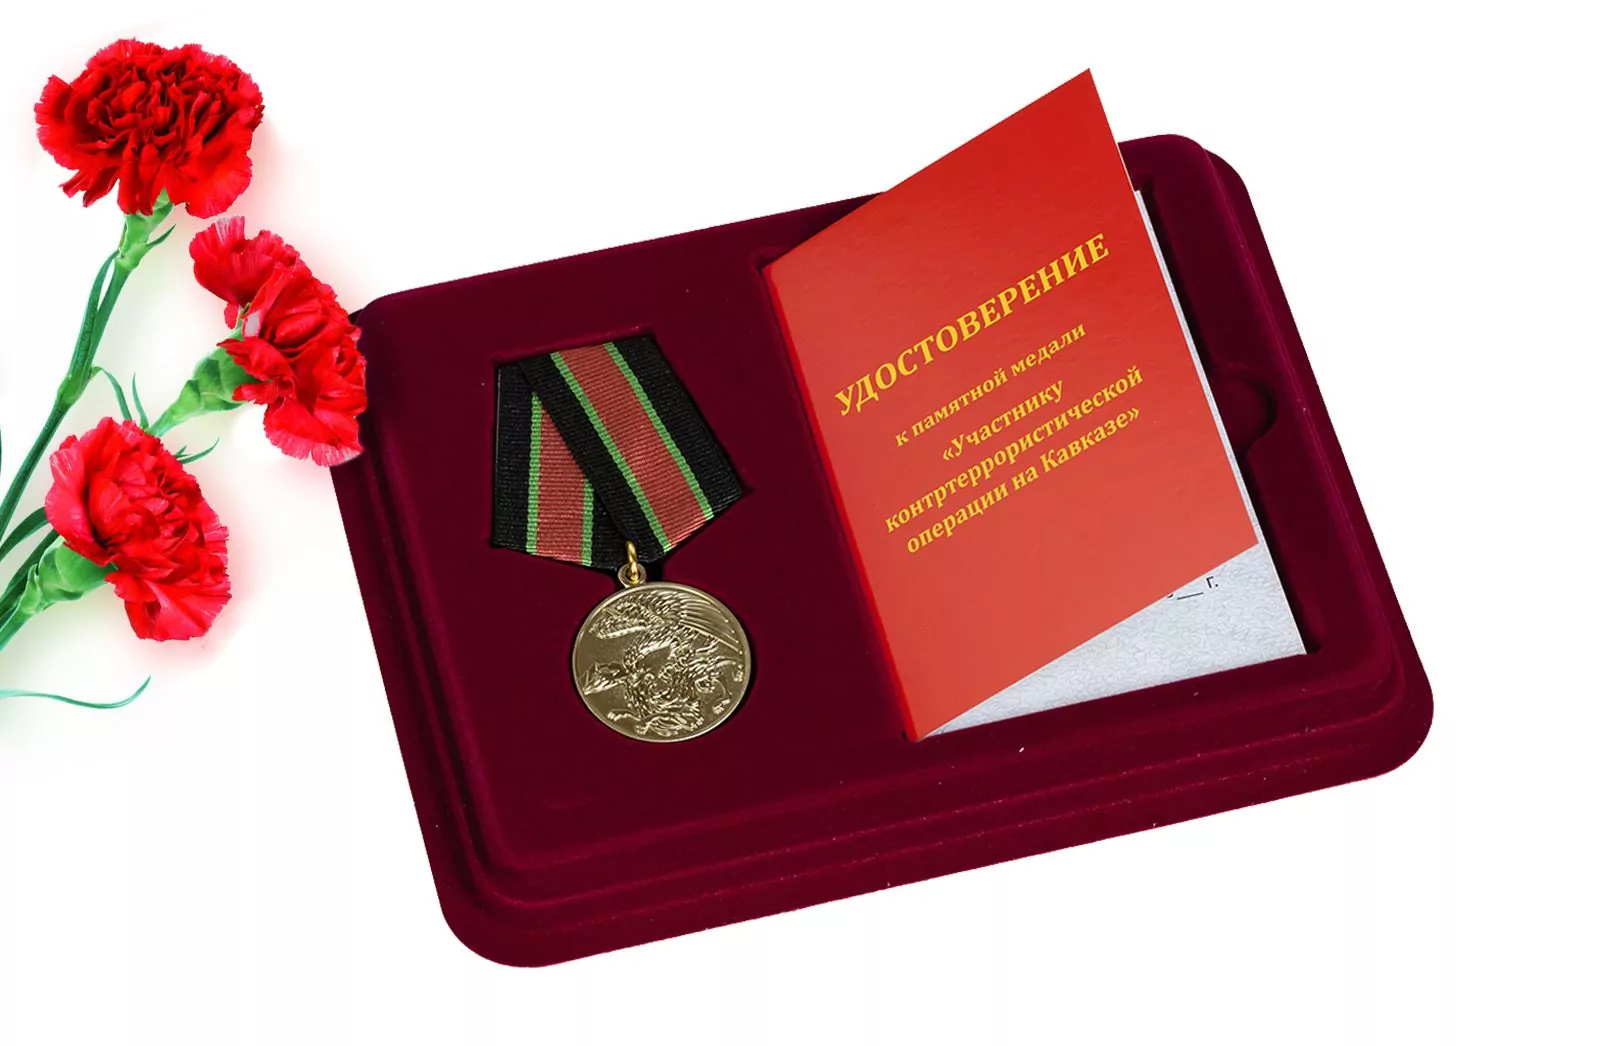 Медаль "За контртеррористическую операцию на Кавказе"  в наградном футляре с ячейкой под удостоверение